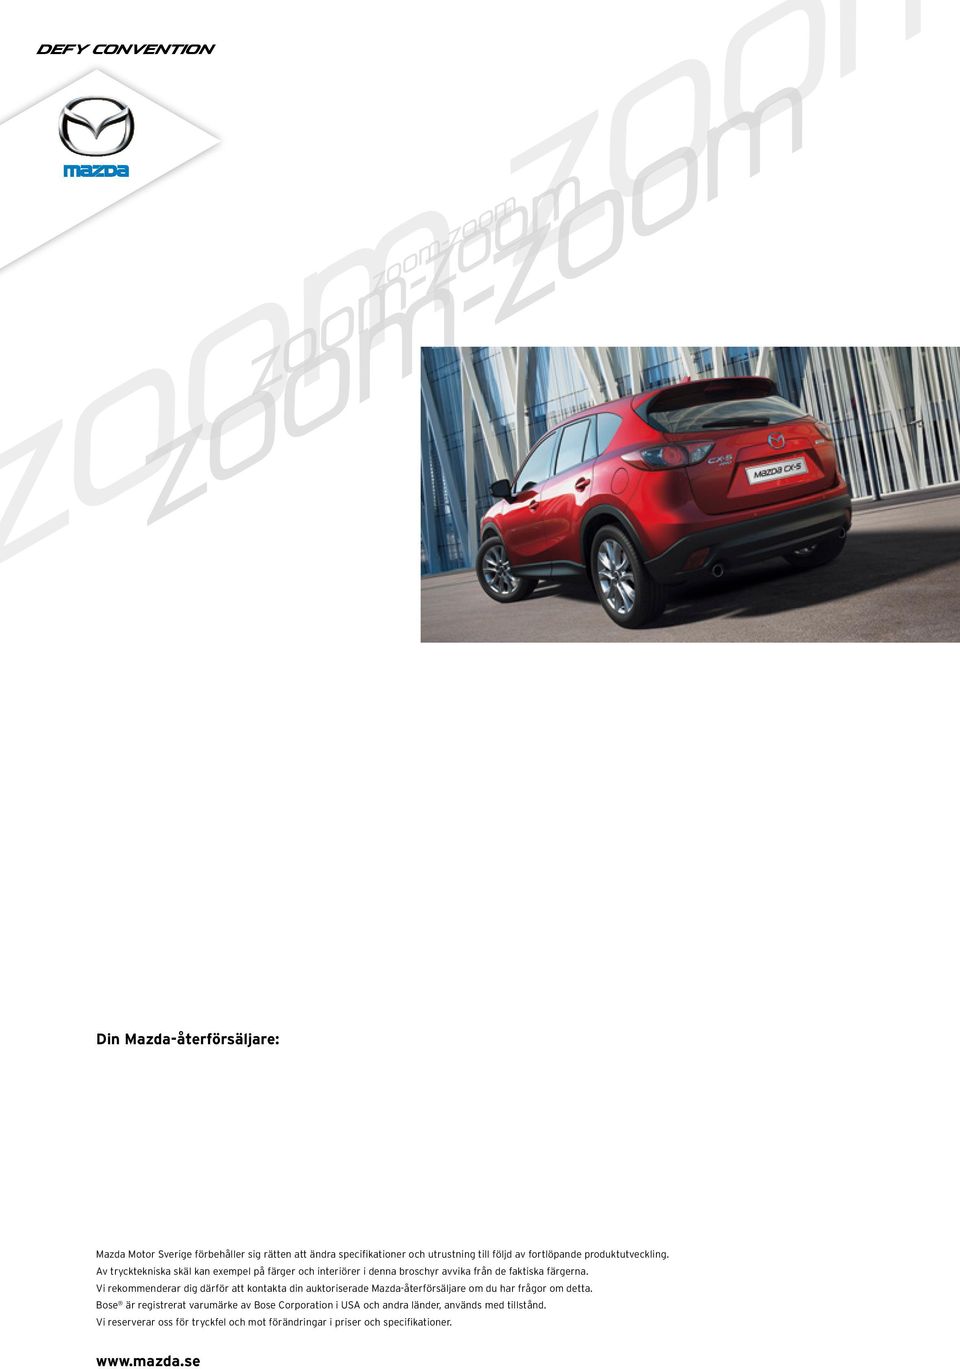 Vi rekommenderar dig därför att kontakta din auktoriserade Mazda-återförsäljare om du har frågor om detta.